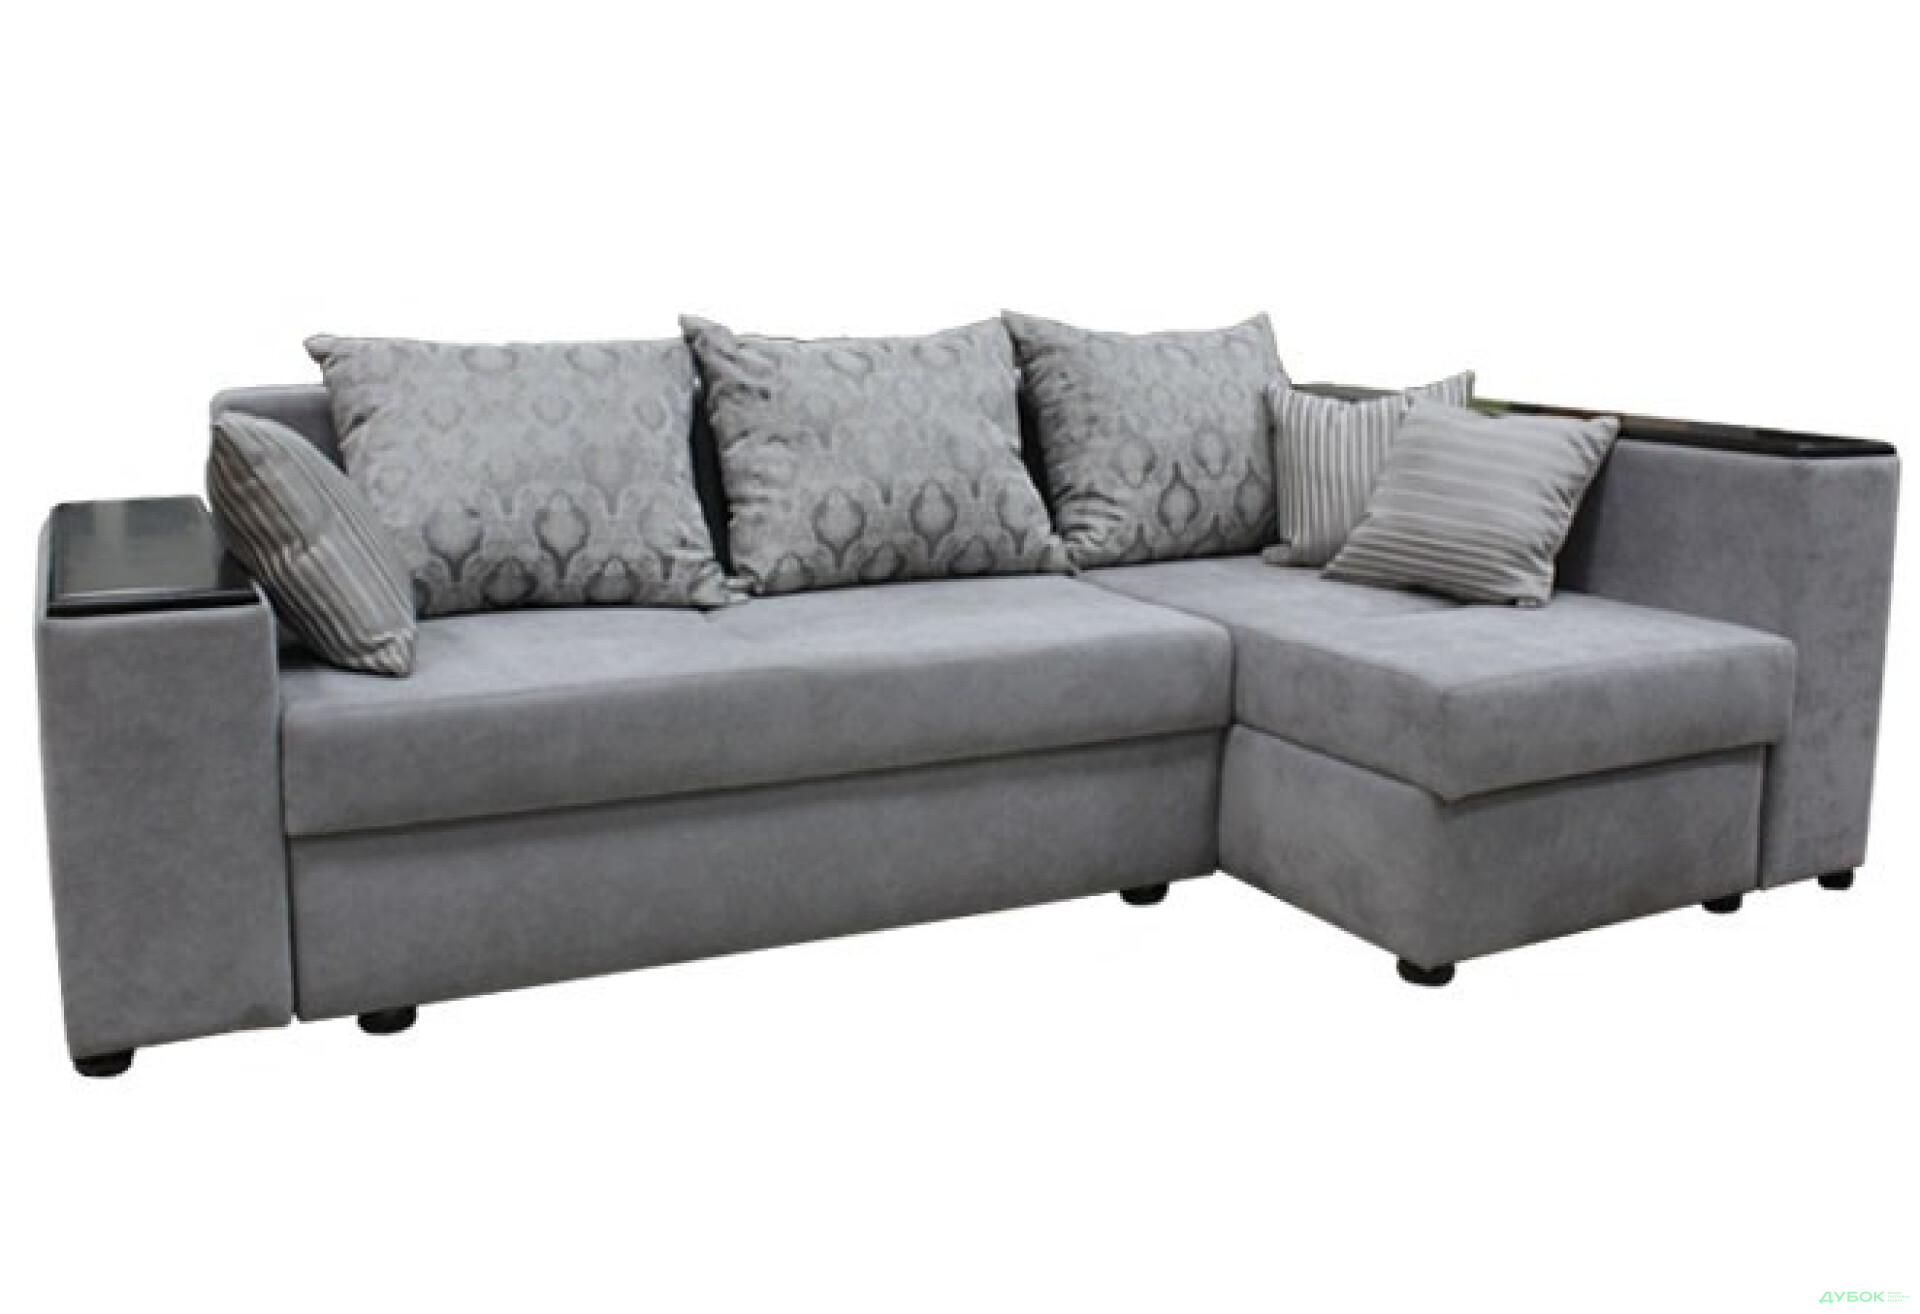 Фото 1 - Мягкий уголок Грандис 2 Угловой диван (Дизайн І) Виком